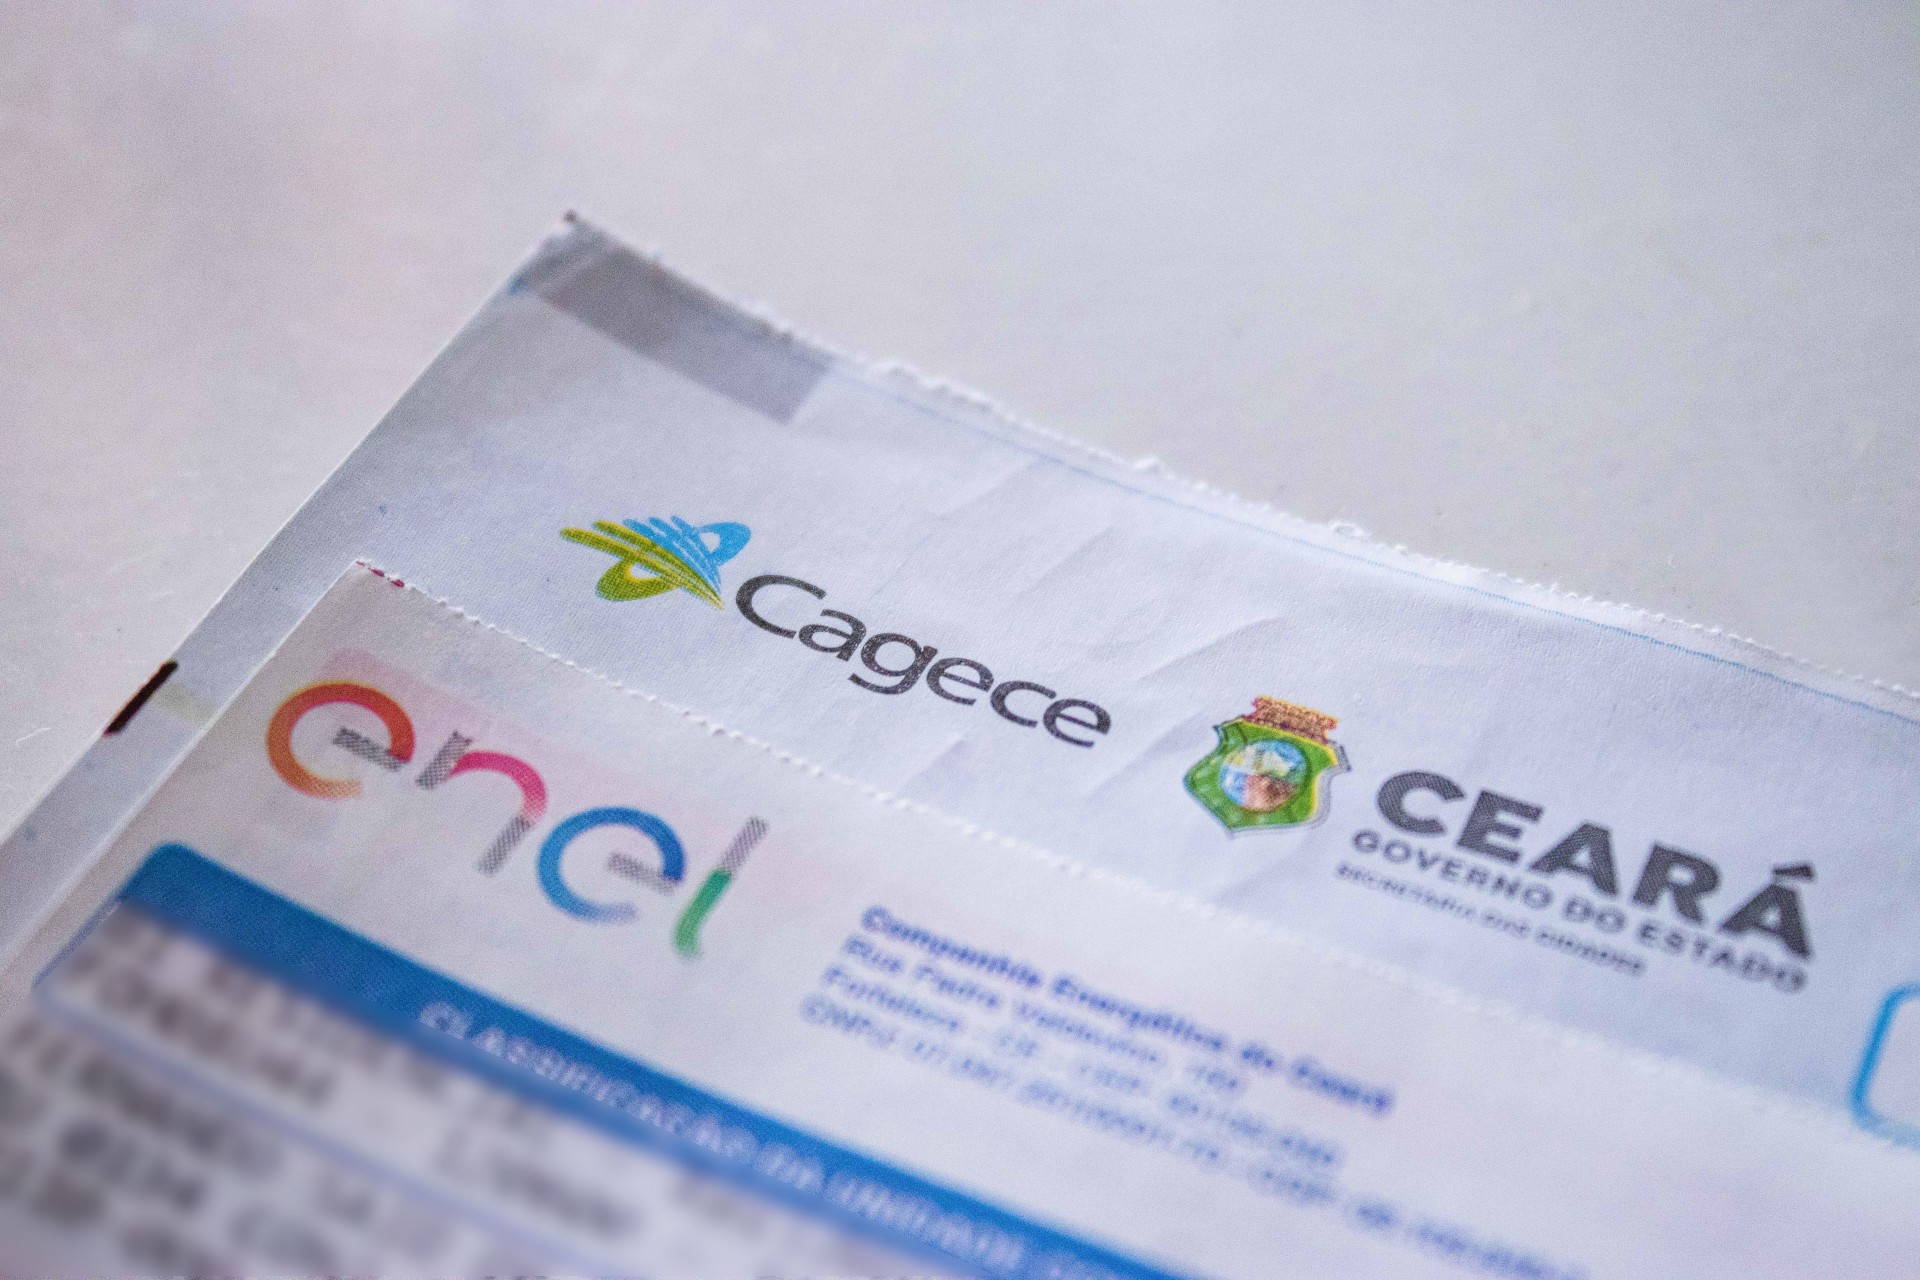 A parceria firmada entre a Enel Brasil e a PicPay prevê também que parte do valor da fatura pago pelo aplicativo com cartão de crédito seja devolvido ao consumidor via programa de cashback. Na foto, dois boletos impressos de contas de companhias de energia e de água e esgoto do Ceará